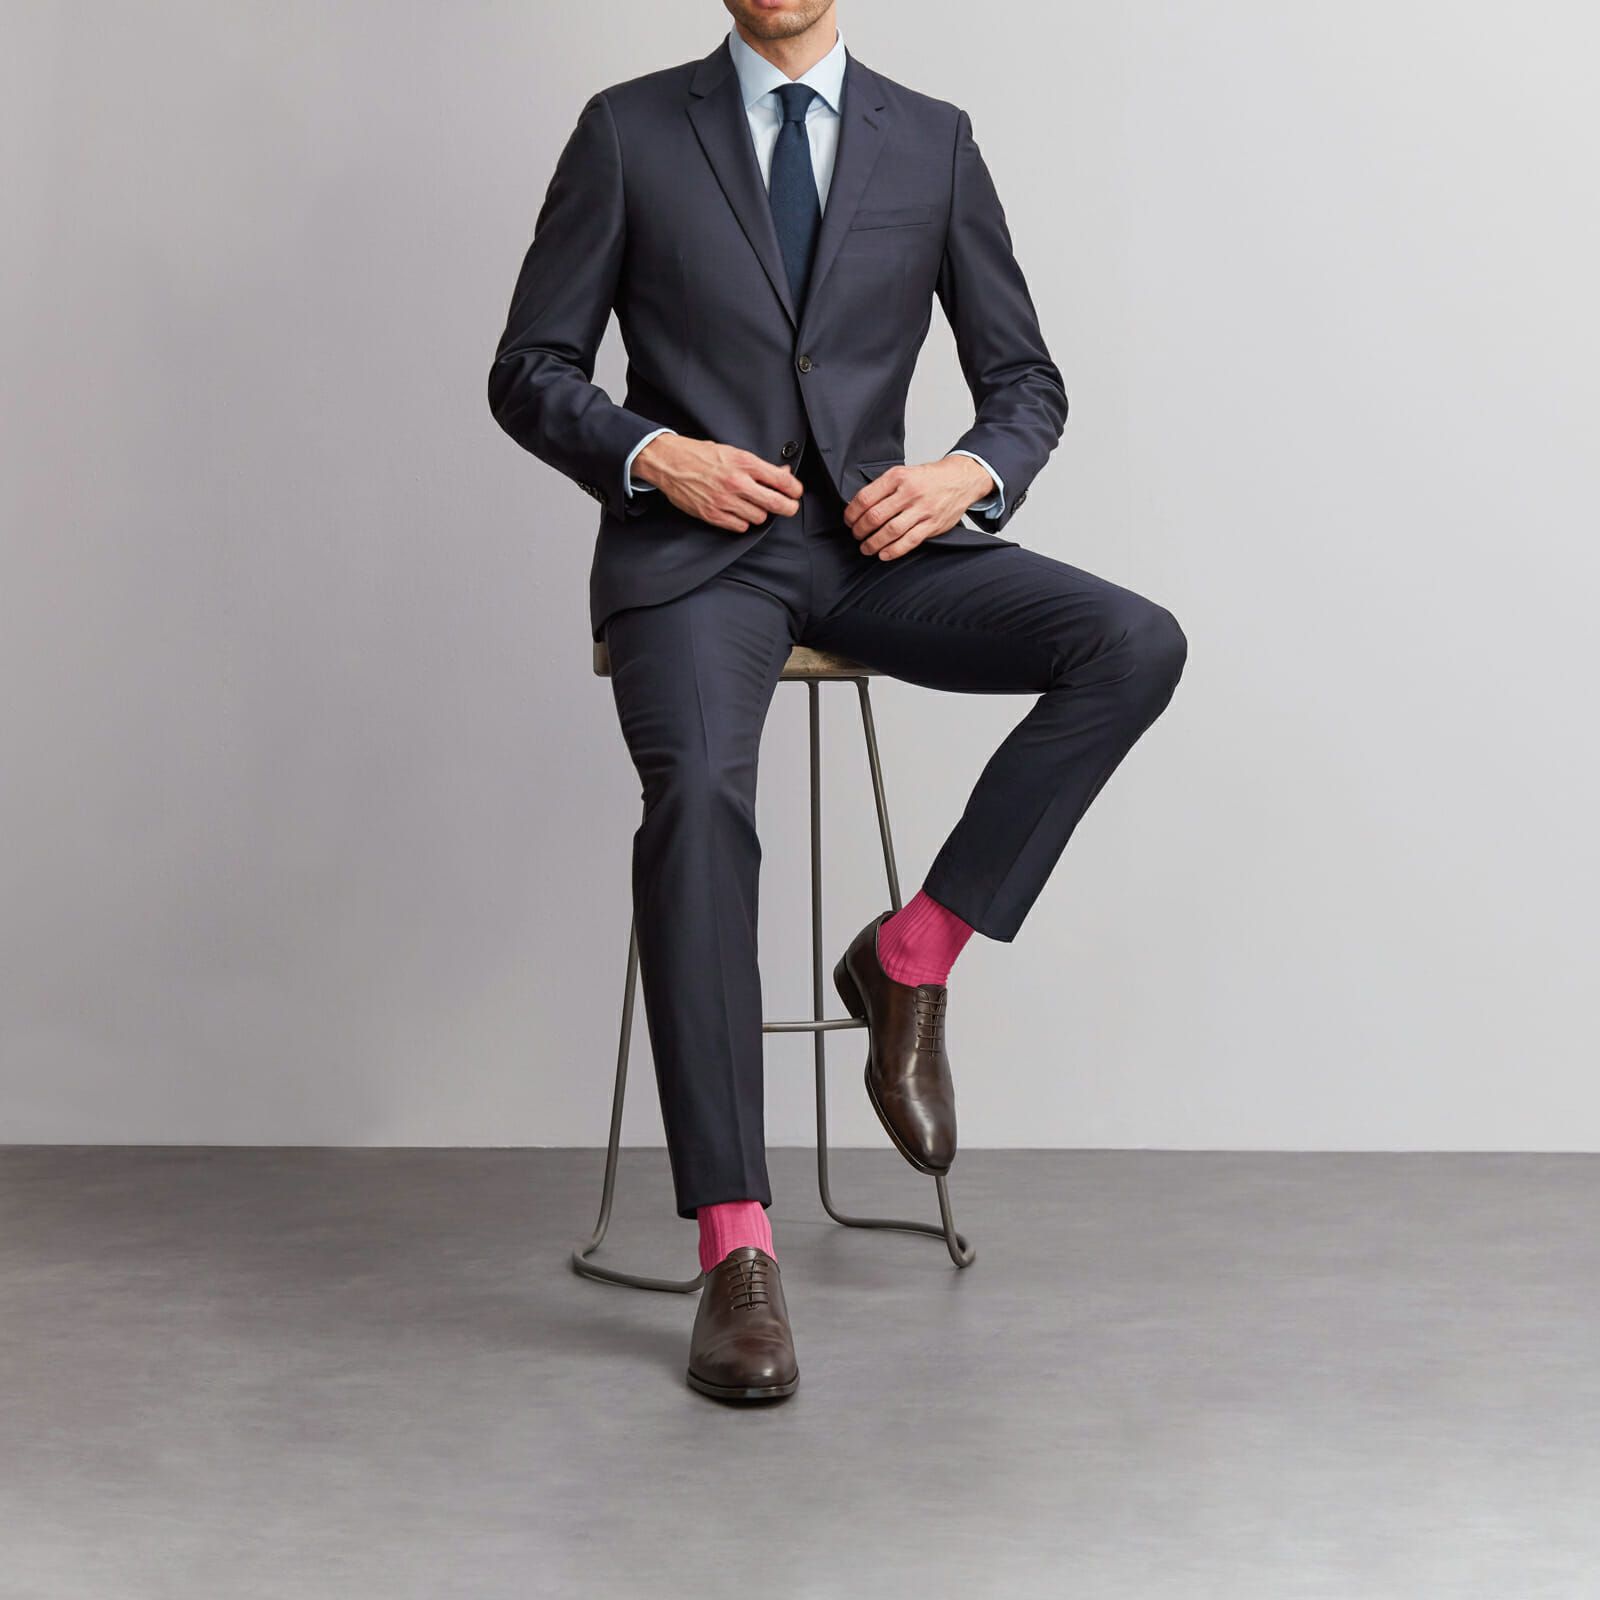 Man in dark suit wearing pink socks